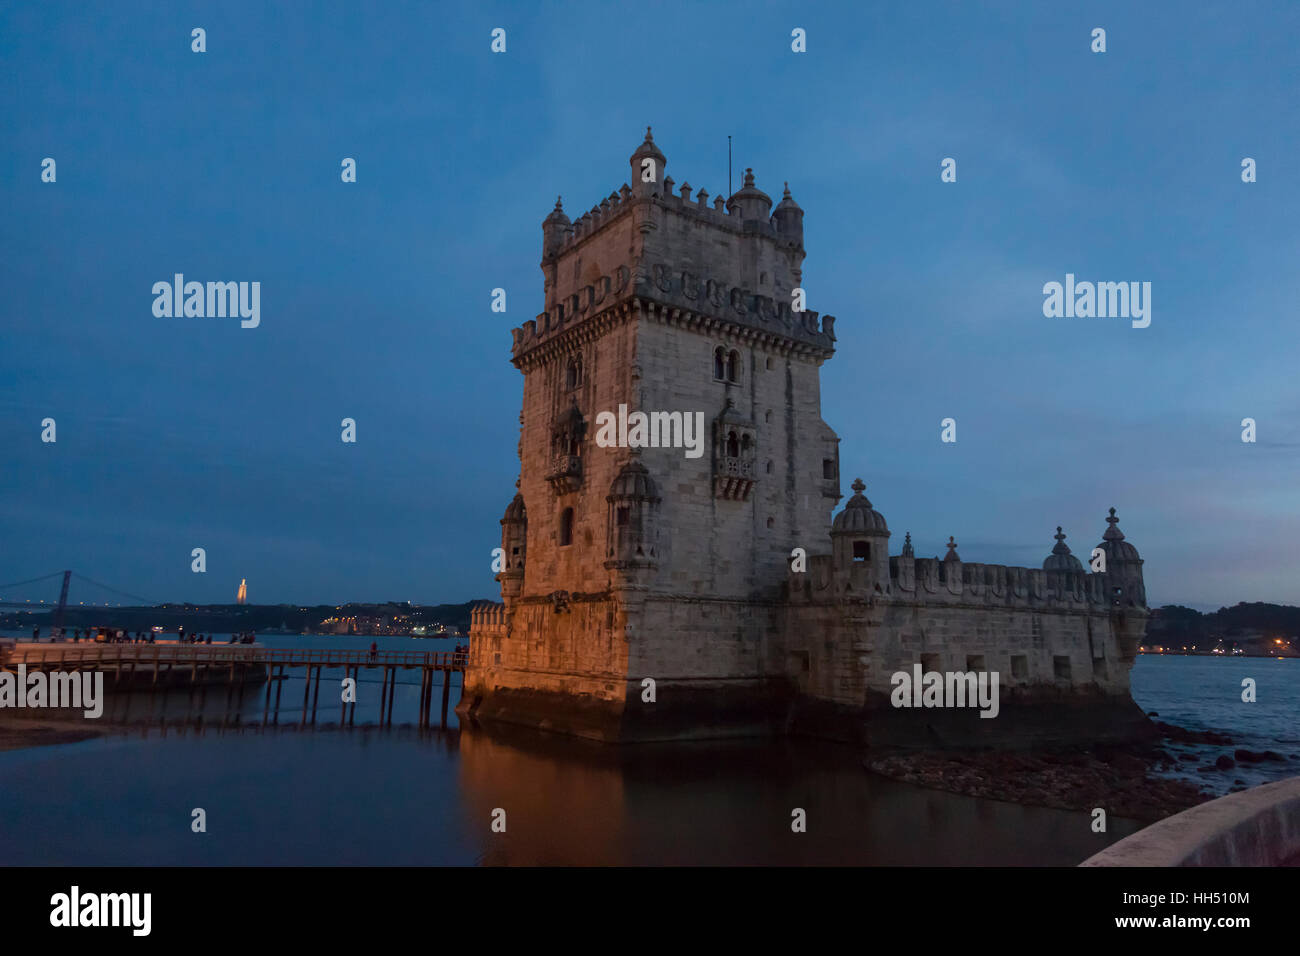 Lisbona, Portogallo: Torre di Belém sulla banca del fiume Tago. Il XVI secolo la fortificazione è un esempio prominente del portoghese stile manuelino. Foto Stock